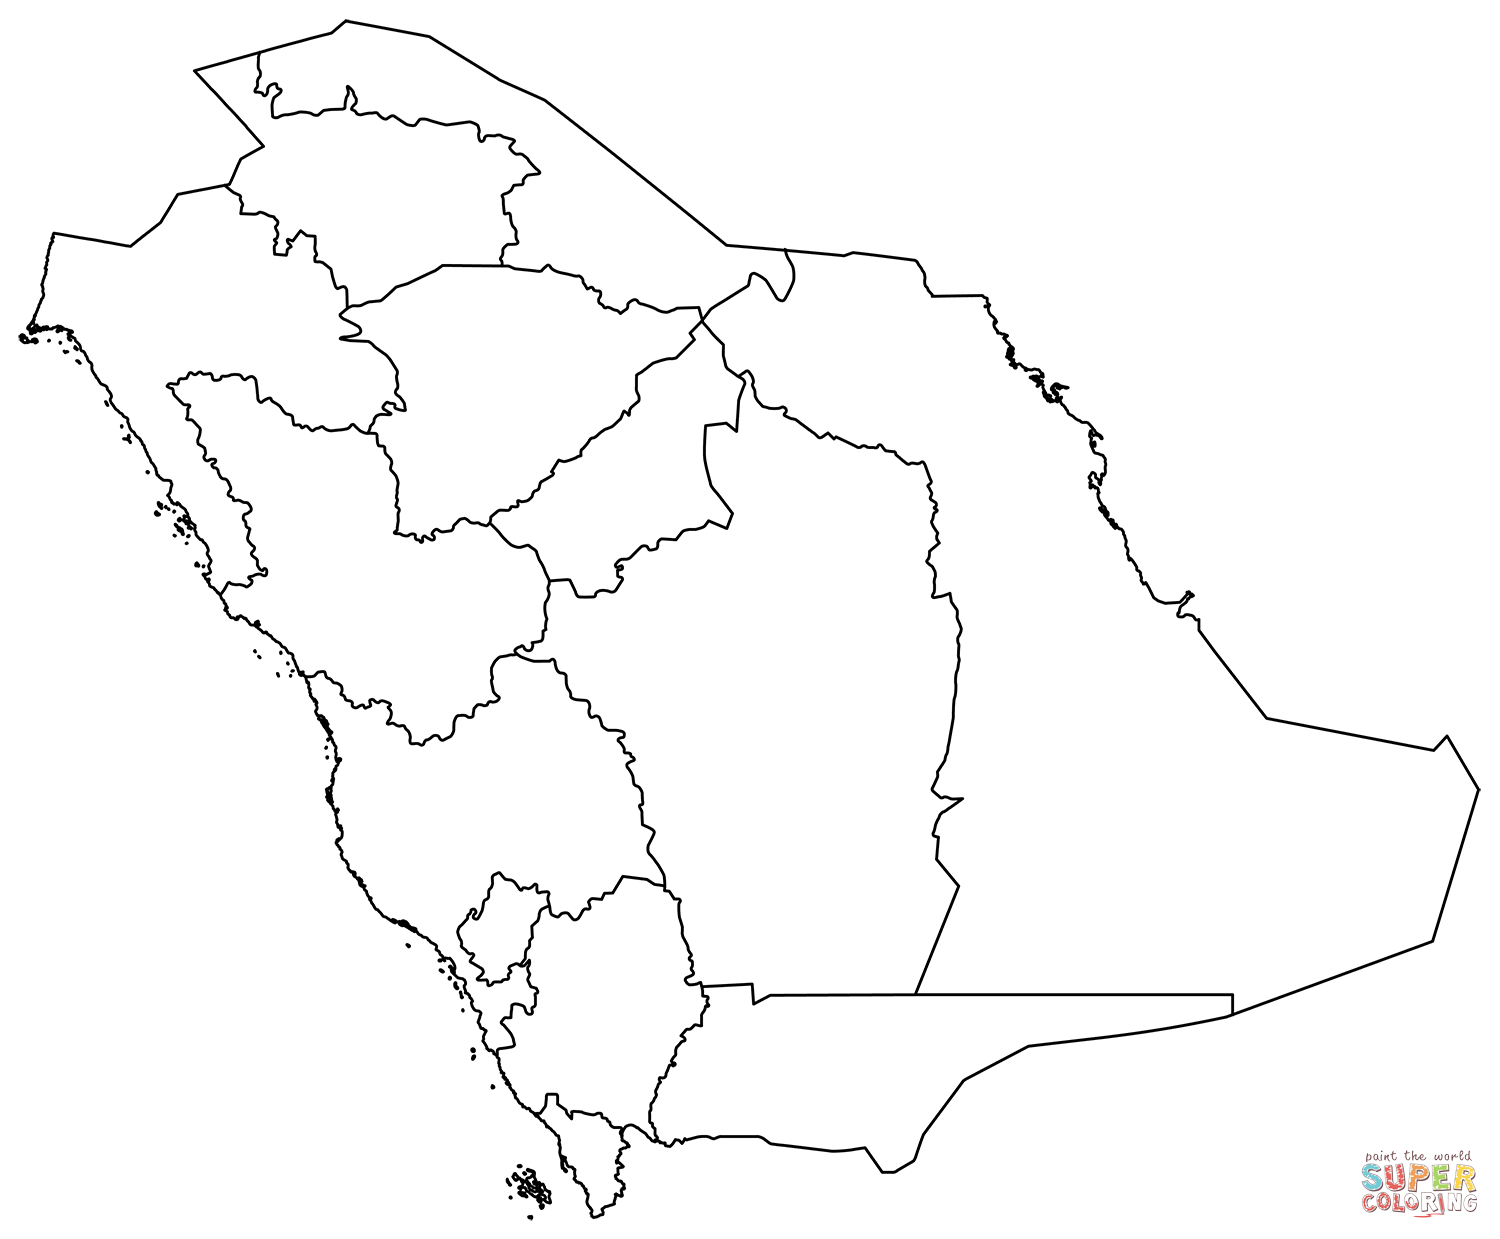 Dibujo de mapa de contorno de arabia saudita con regiones para colorear dibujos para colorear imprimir gratis